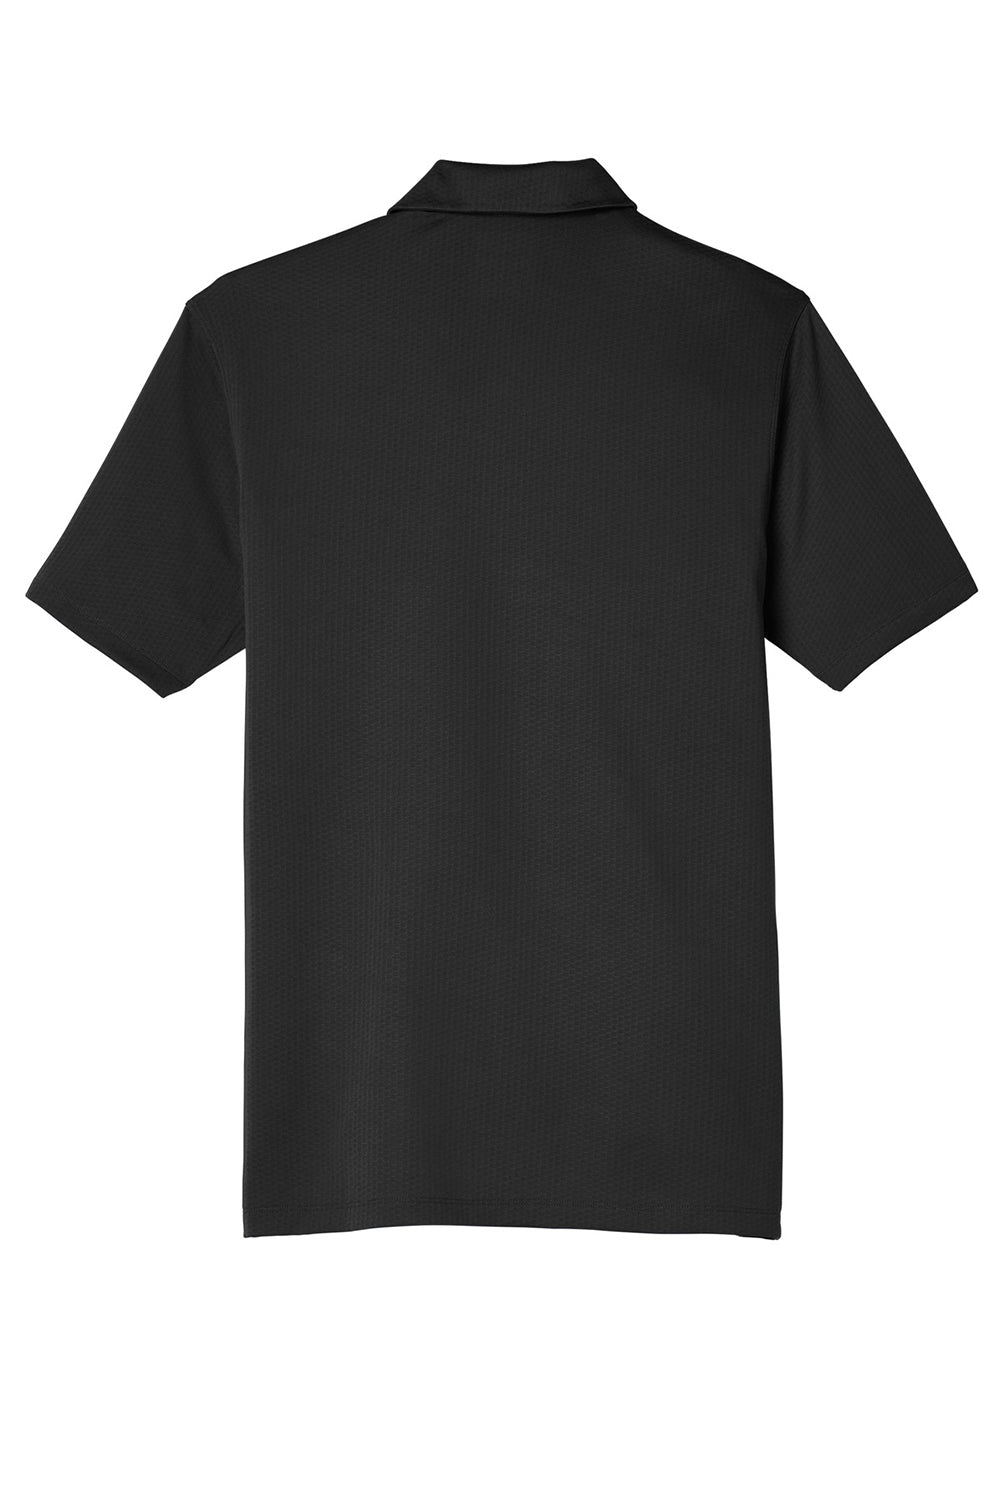 Nike NKAH6266 Mens Dri-Fit Moisture Wicking Short Sleeve Polo Shirt Black Flat Back